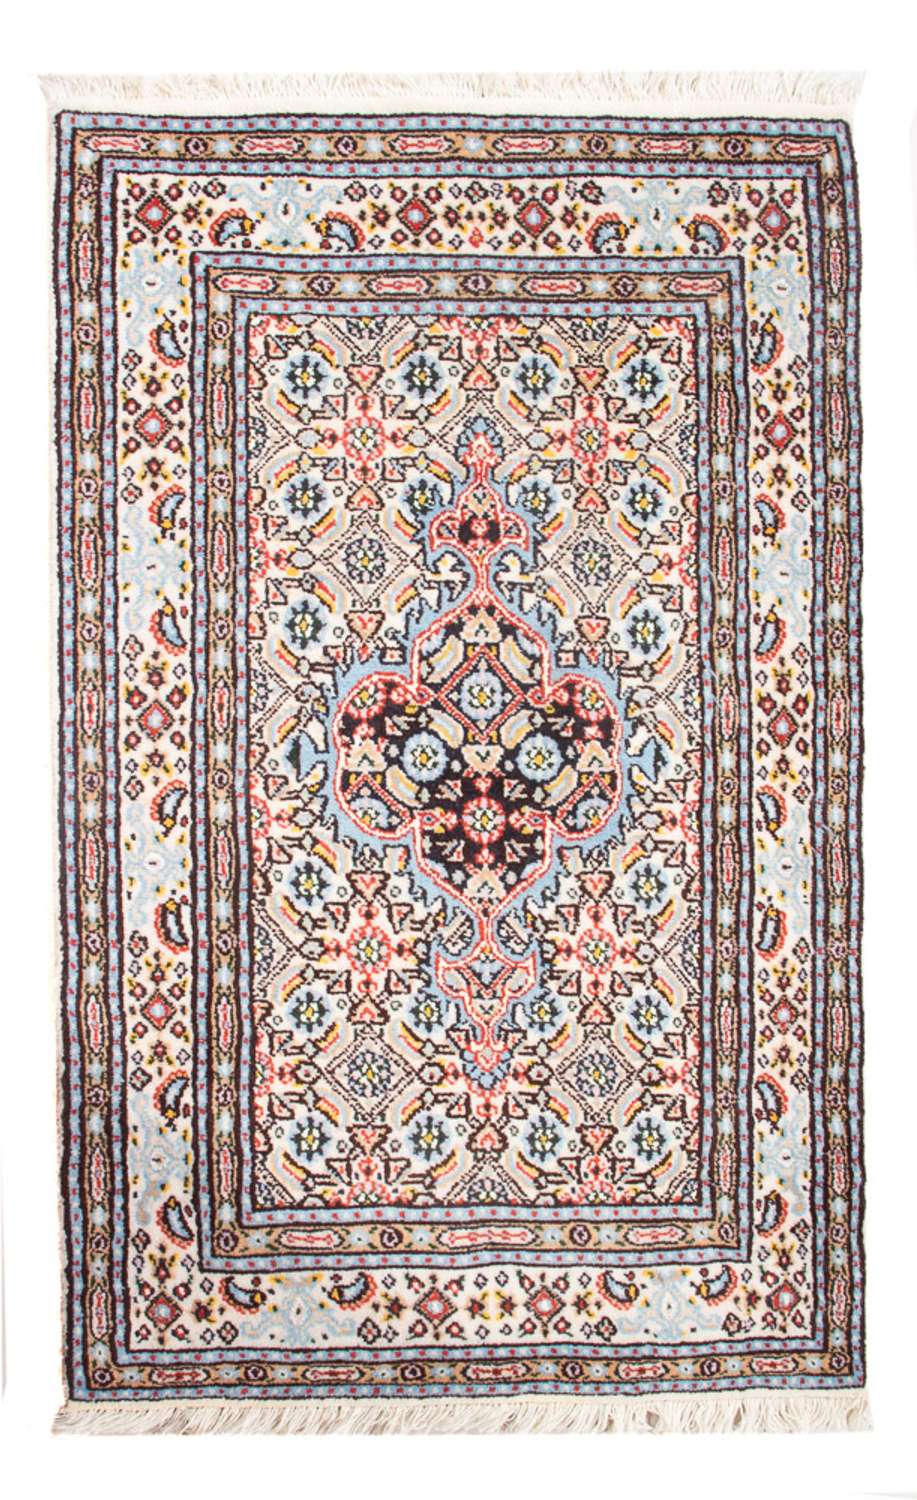 Persisk teppe - klassisk - Royal - 90 x 60 cm - flerfarget